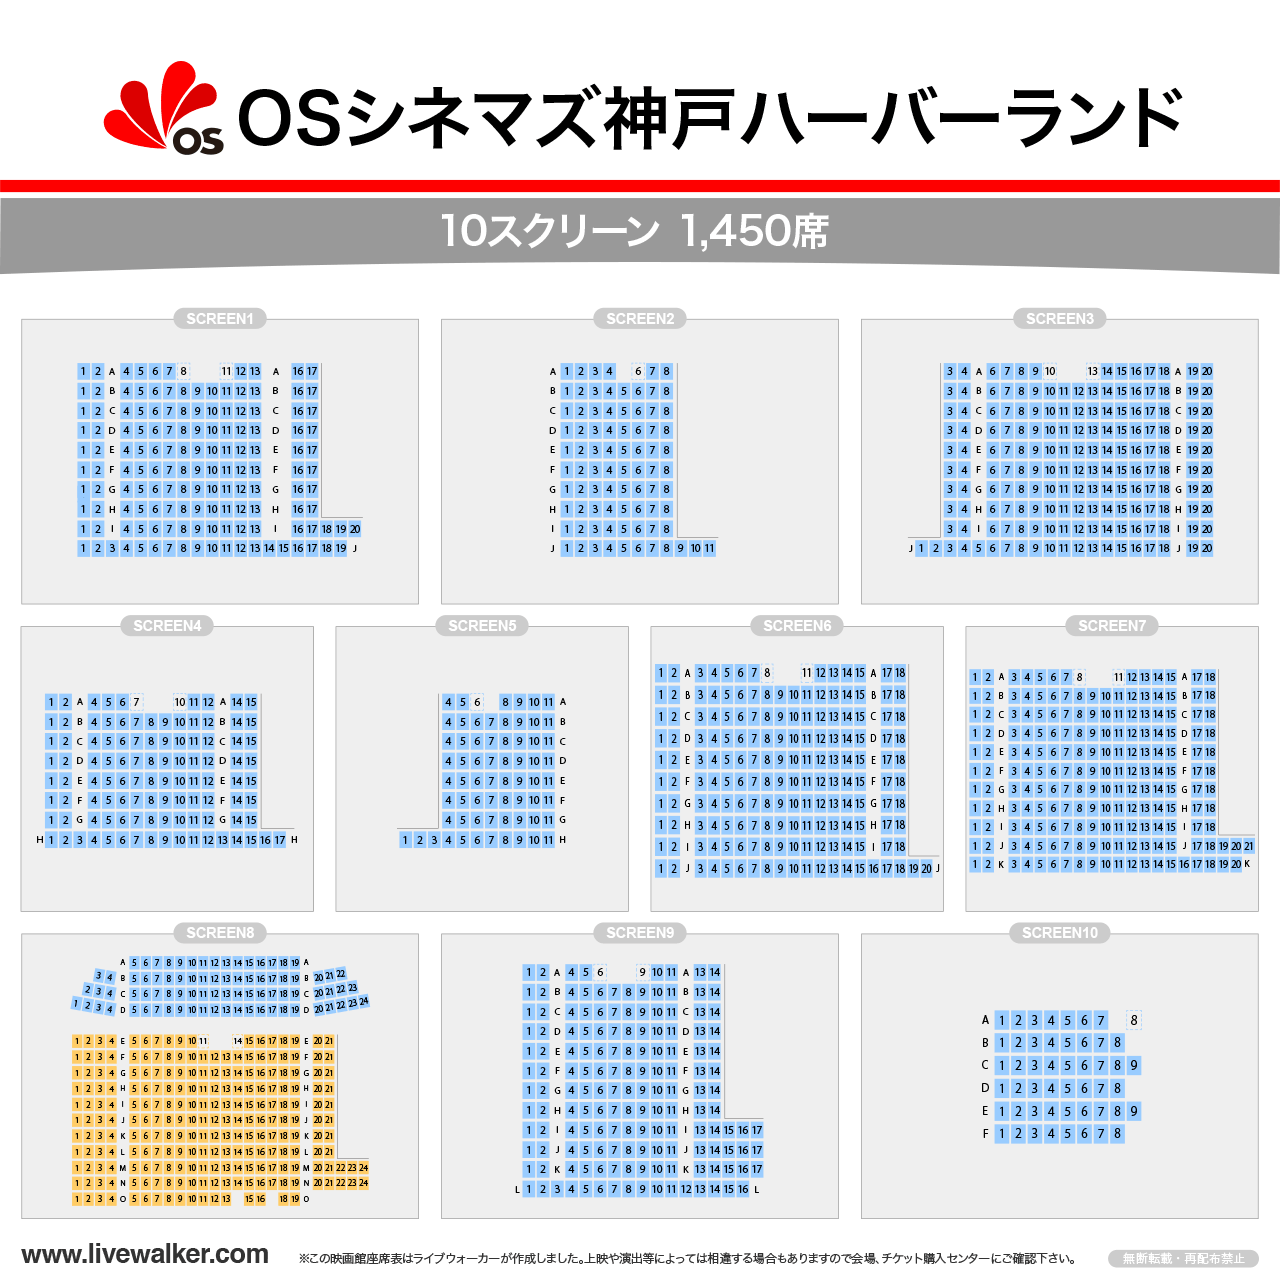 OSシネマズ 神戸ハーバーランドスクリーンの座席表